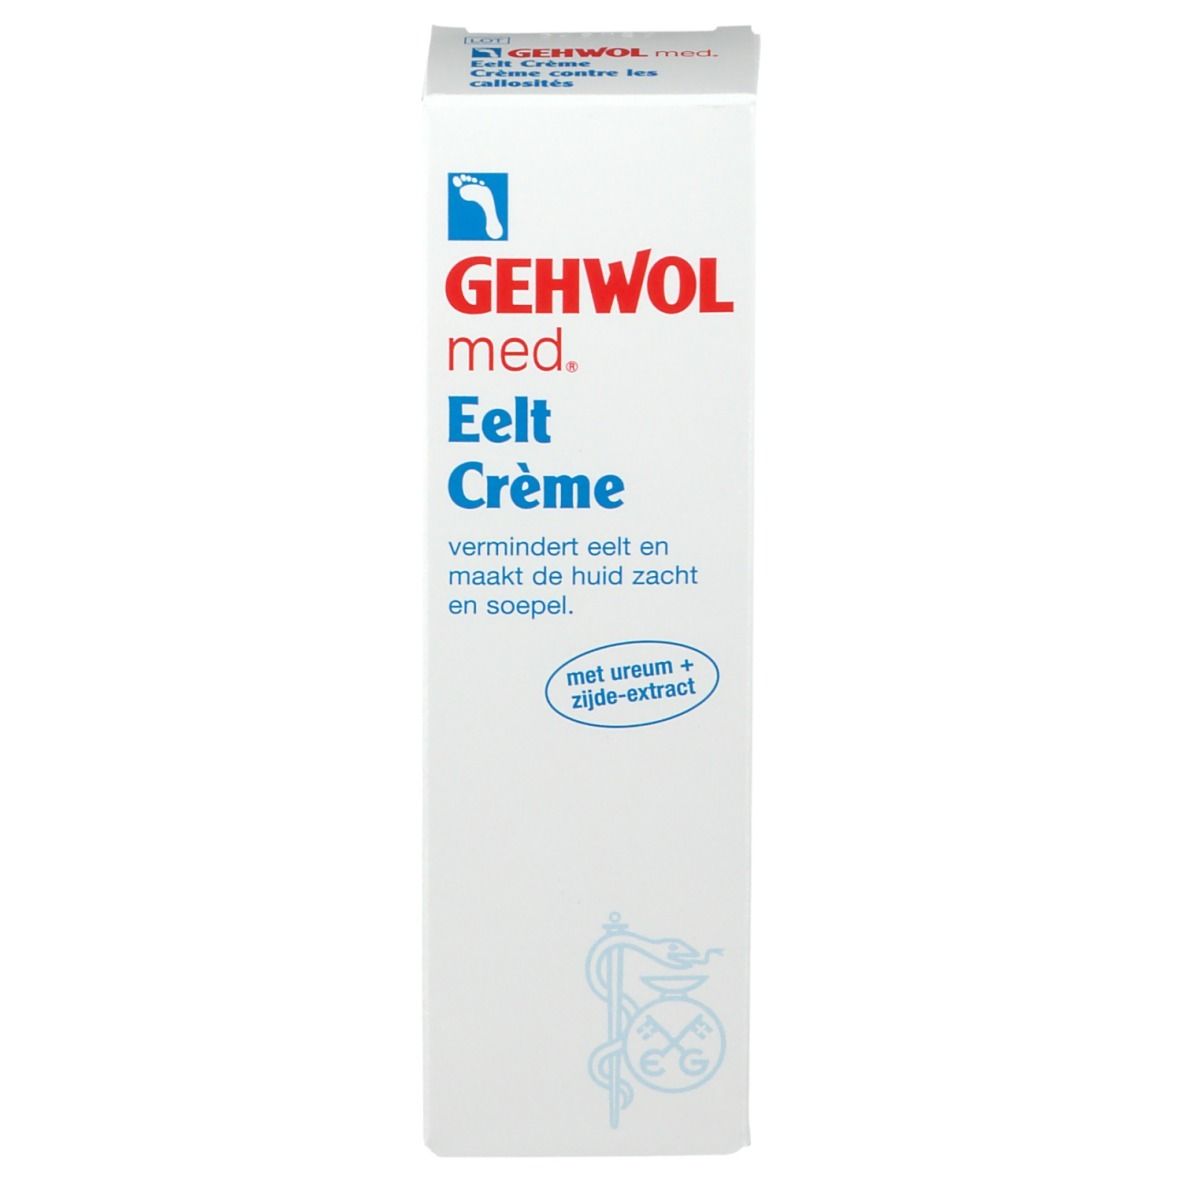 Gehwol Med. Crème contre les callosités